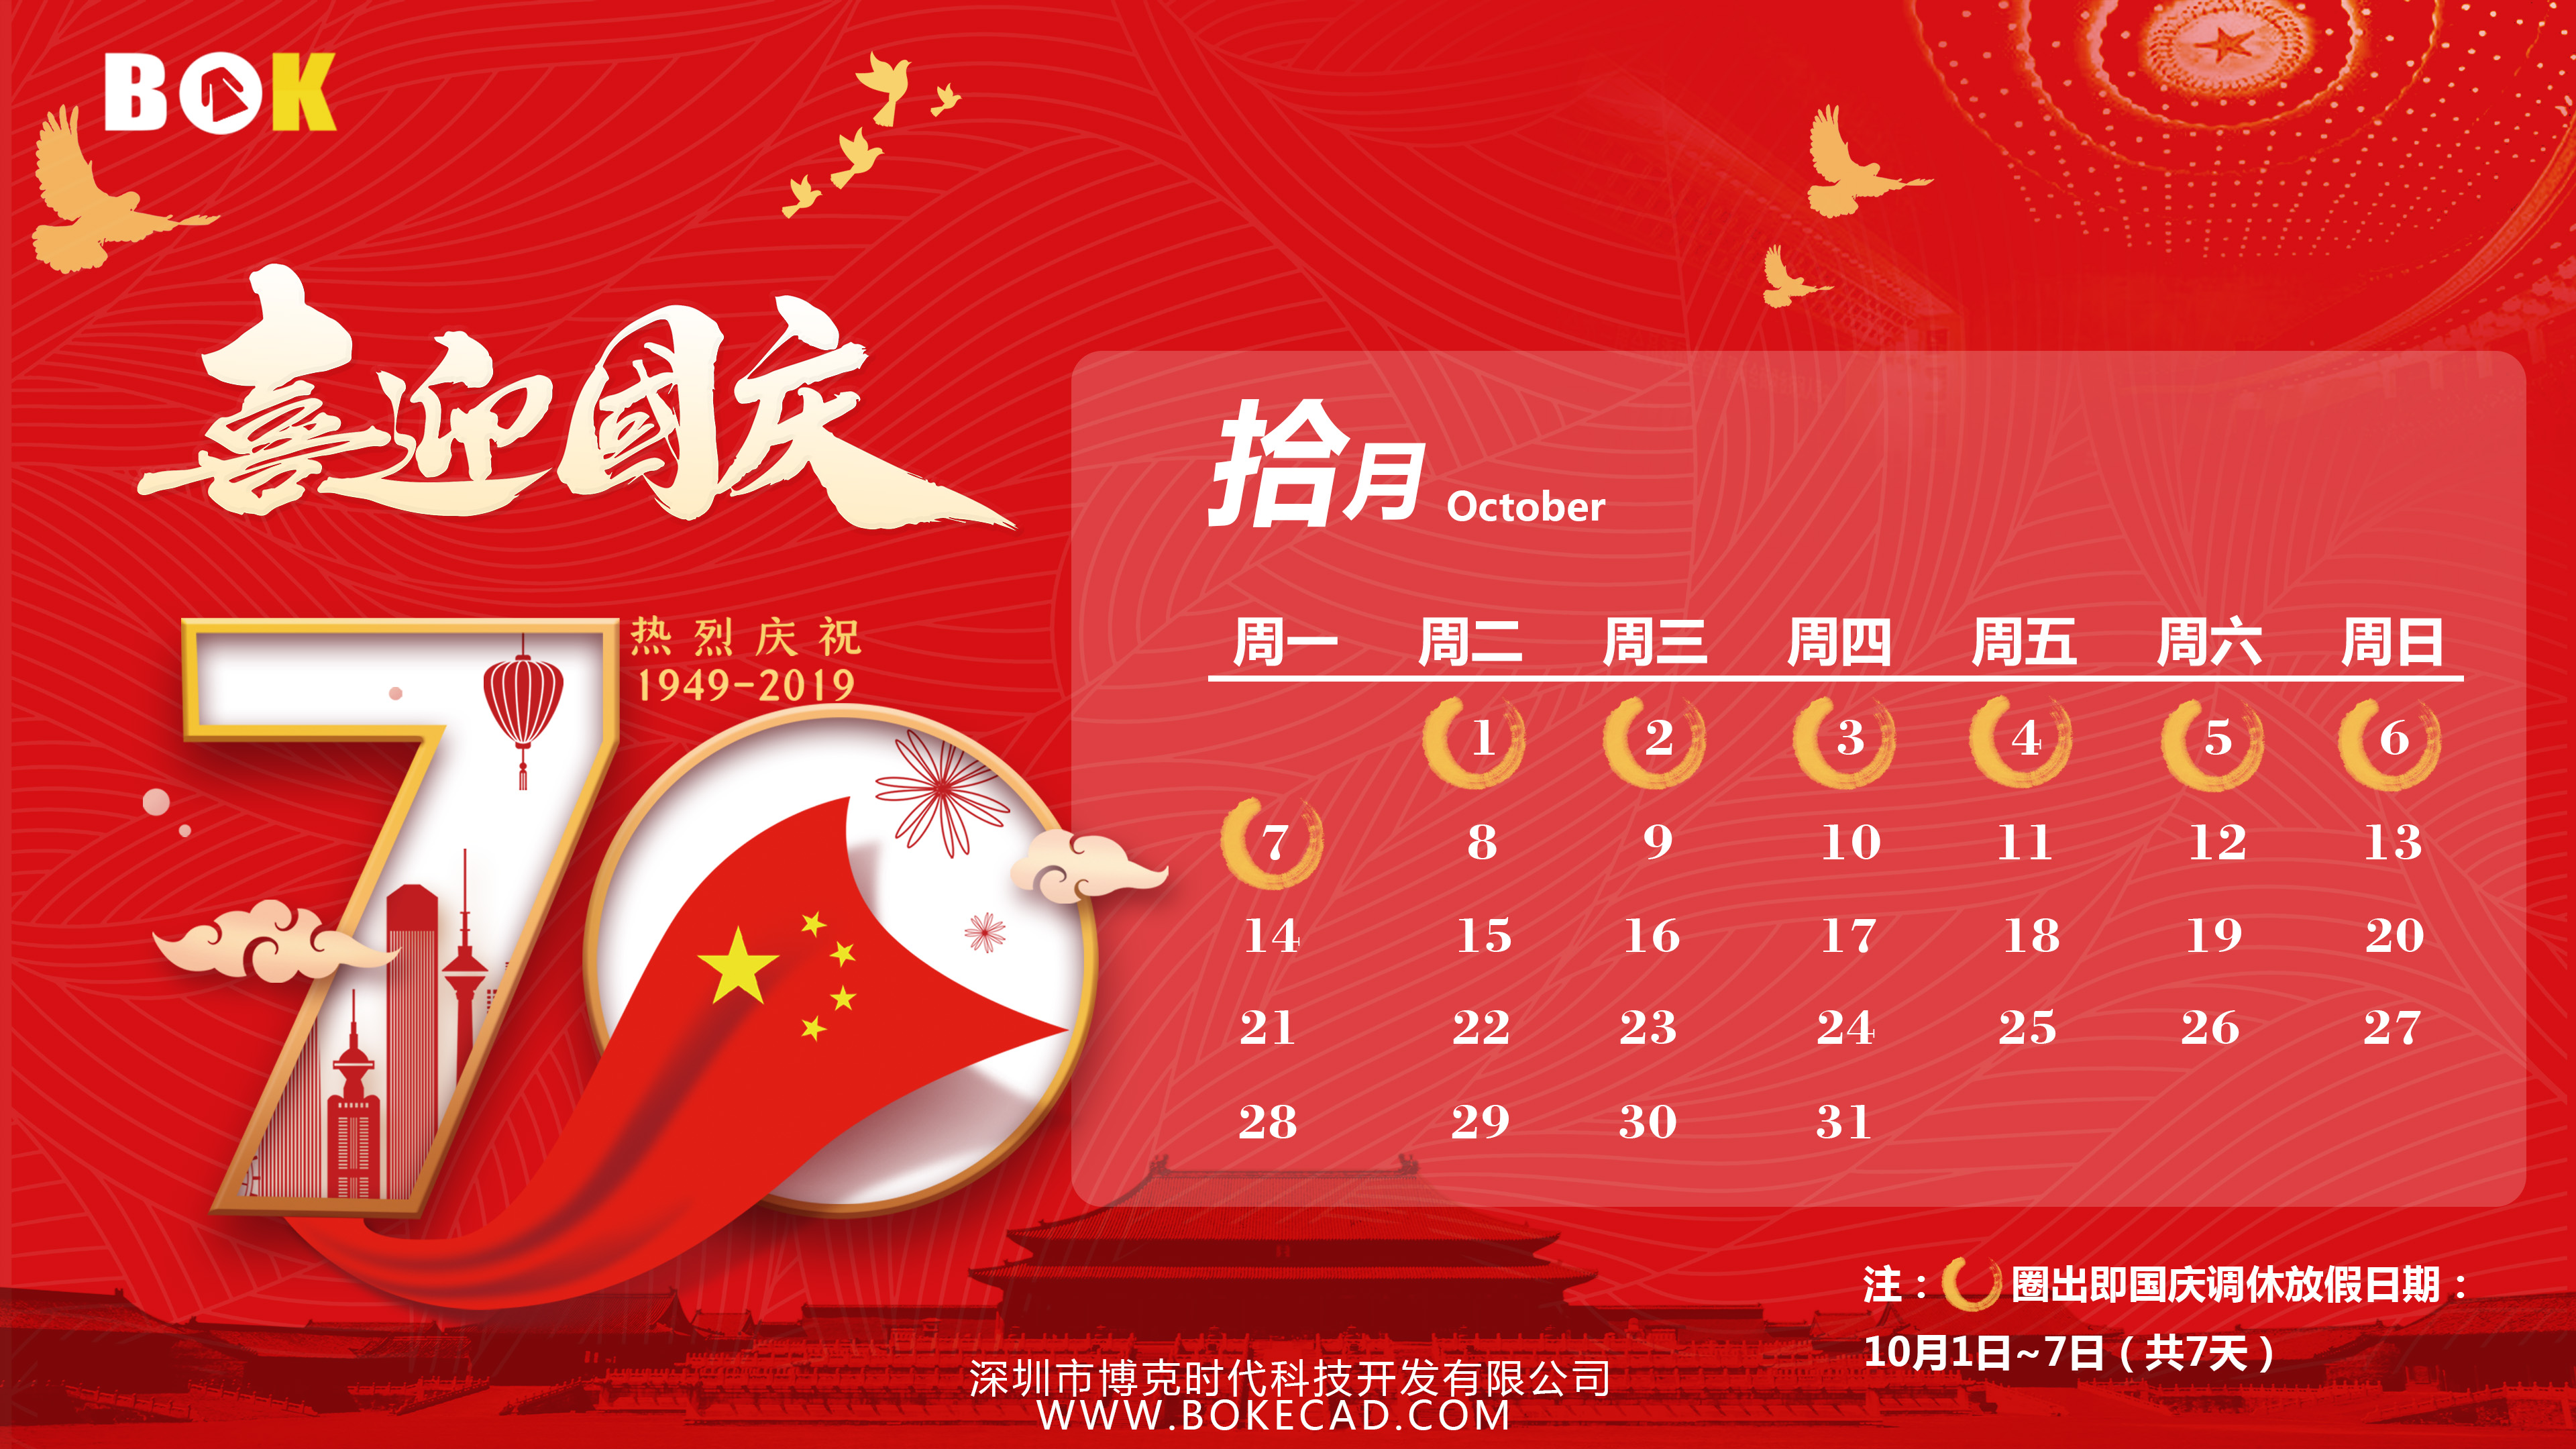 【通知】2019年“国庆节”放假通知！热烈庆祝中华人民共和国成立70周年